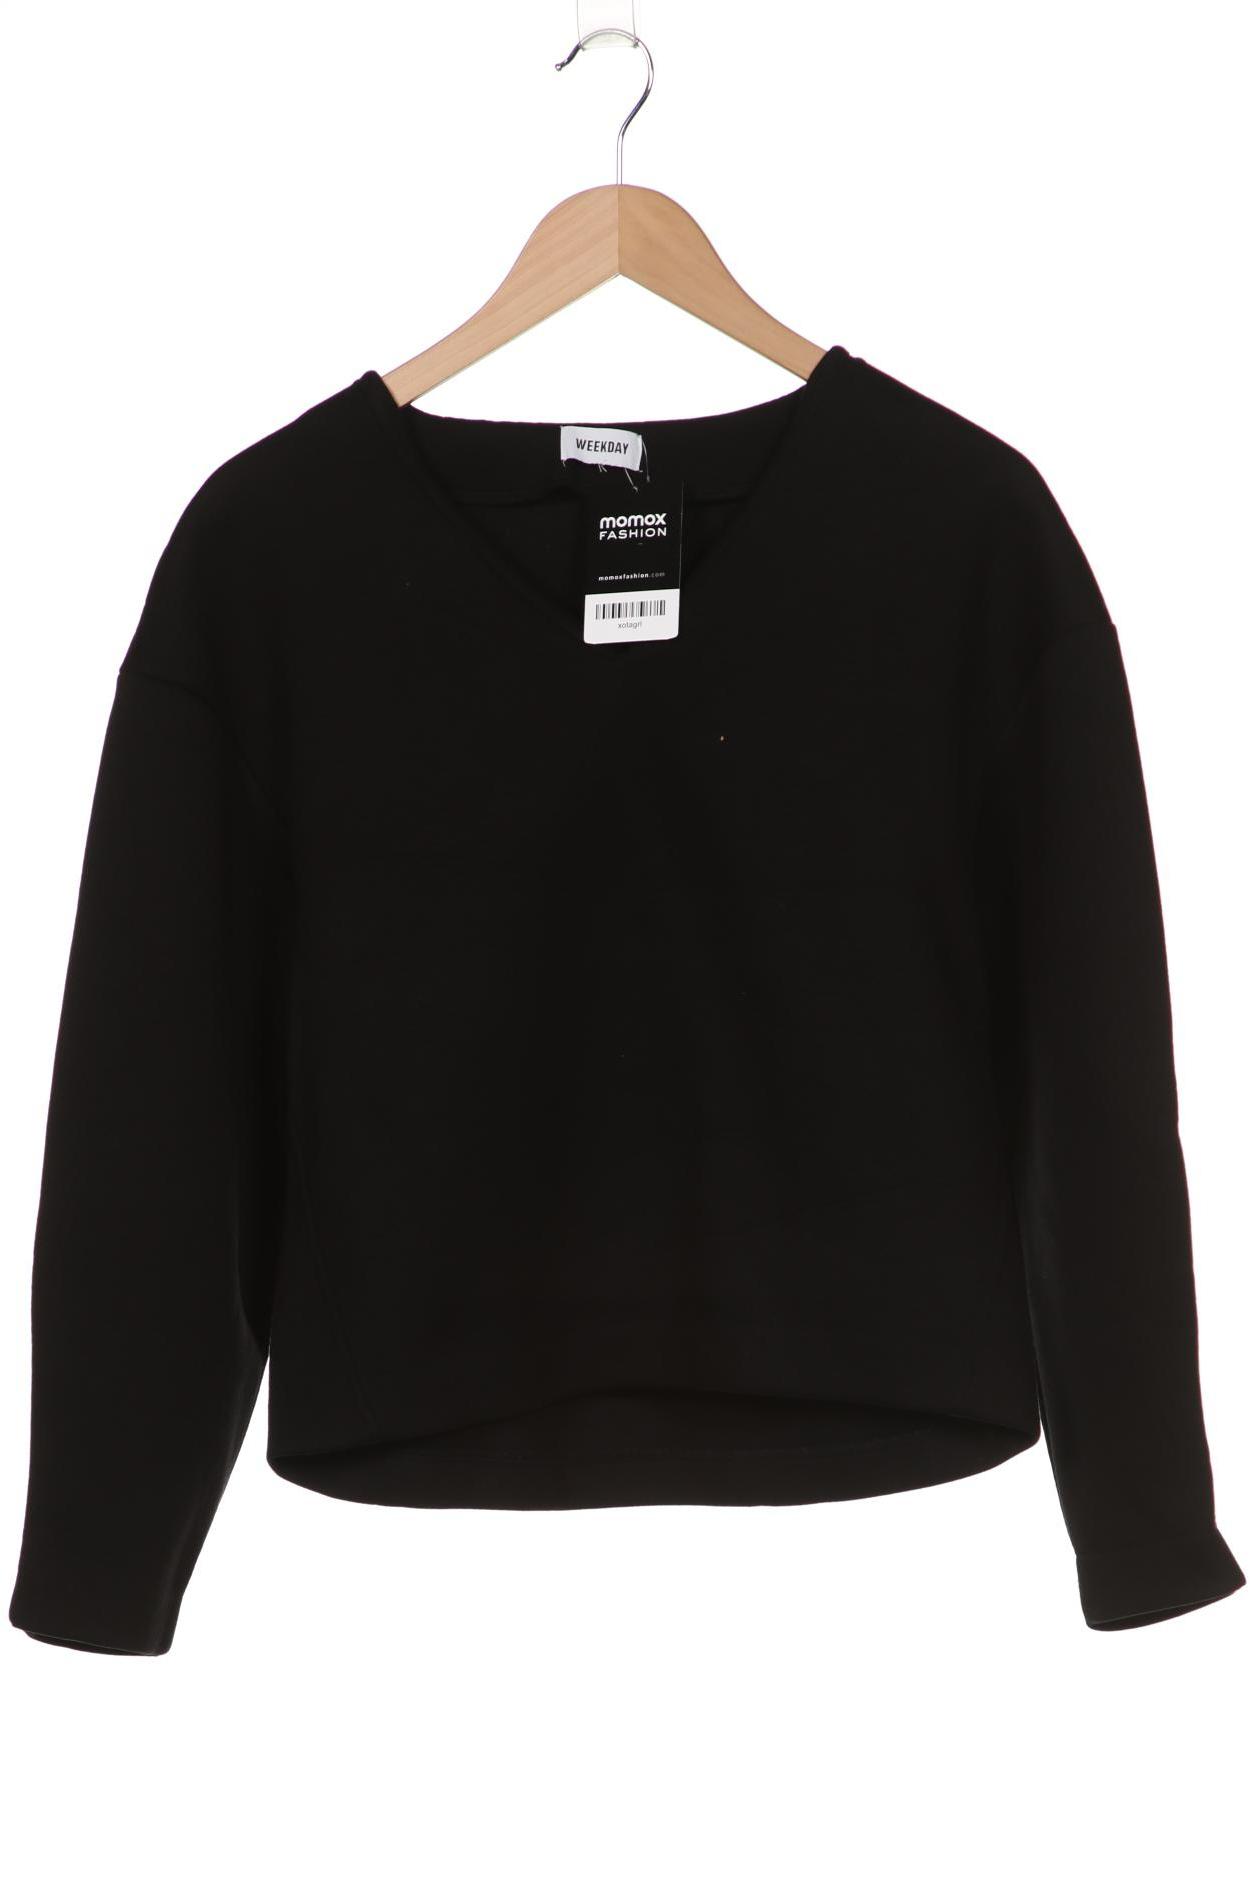 Weekday Damen Sweatshirt, schwarz, Gr. 42 von Weekday